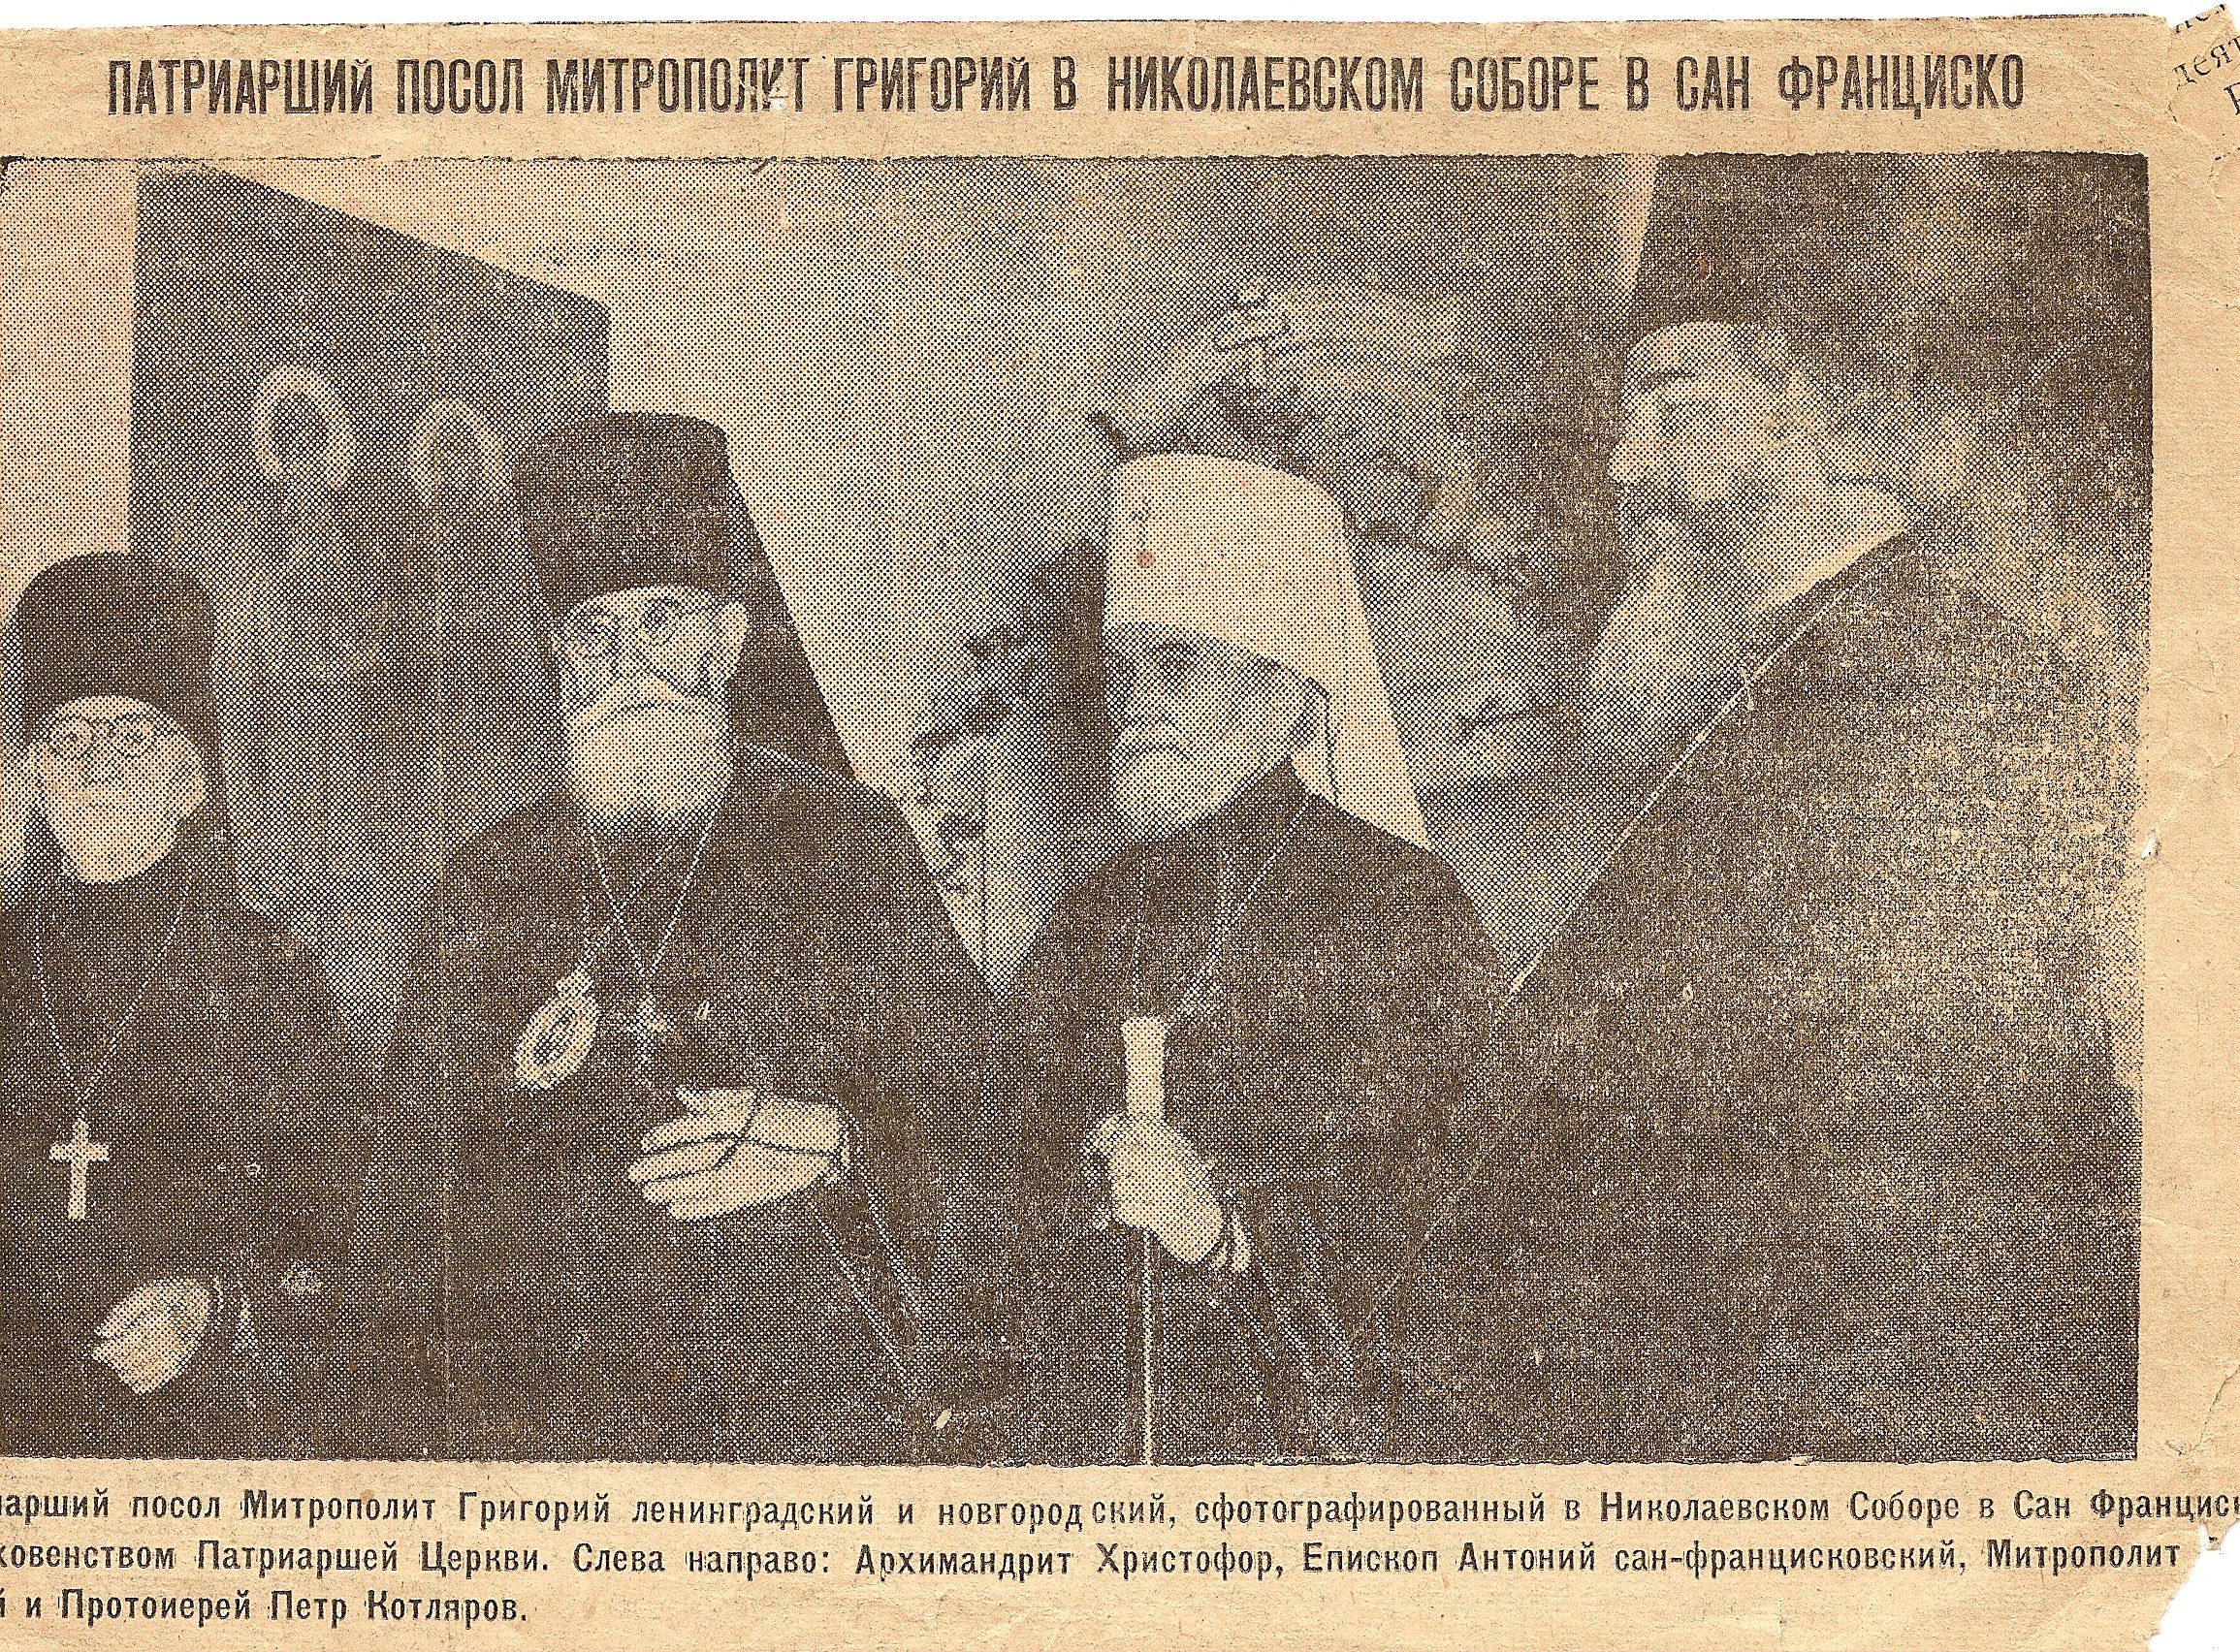 Патриарший посол митрополит Григорий с духовенством патриаршей церкви в Николаевском соборе Сан-Франциско. 21 октября 1947 г